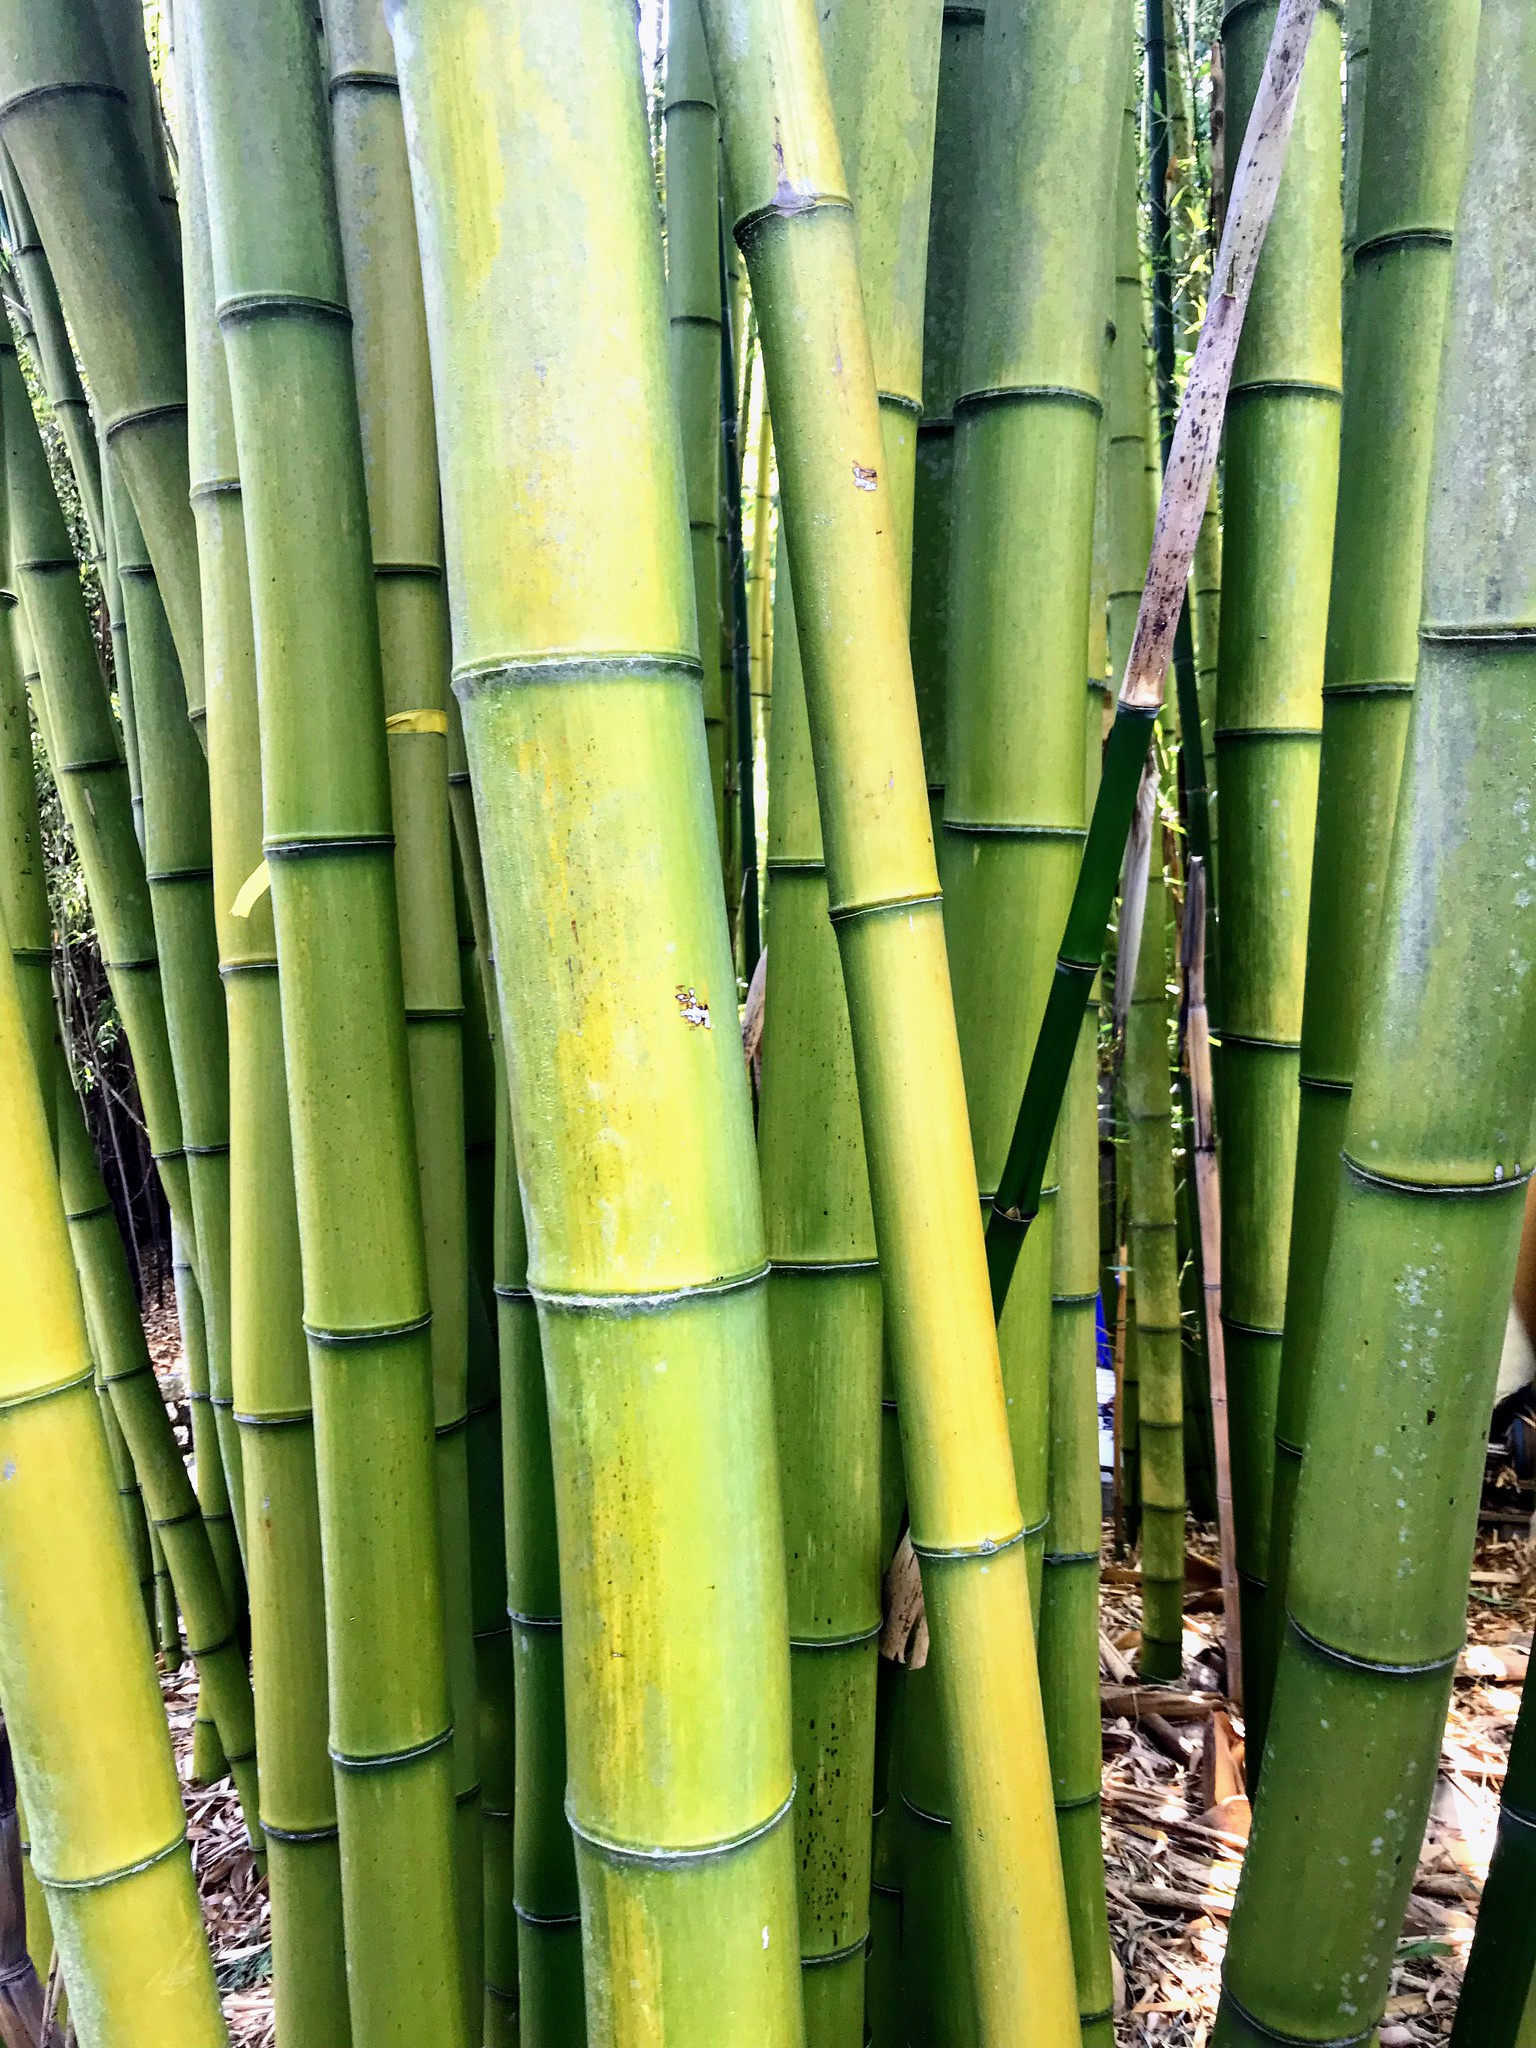 Timber bamboo